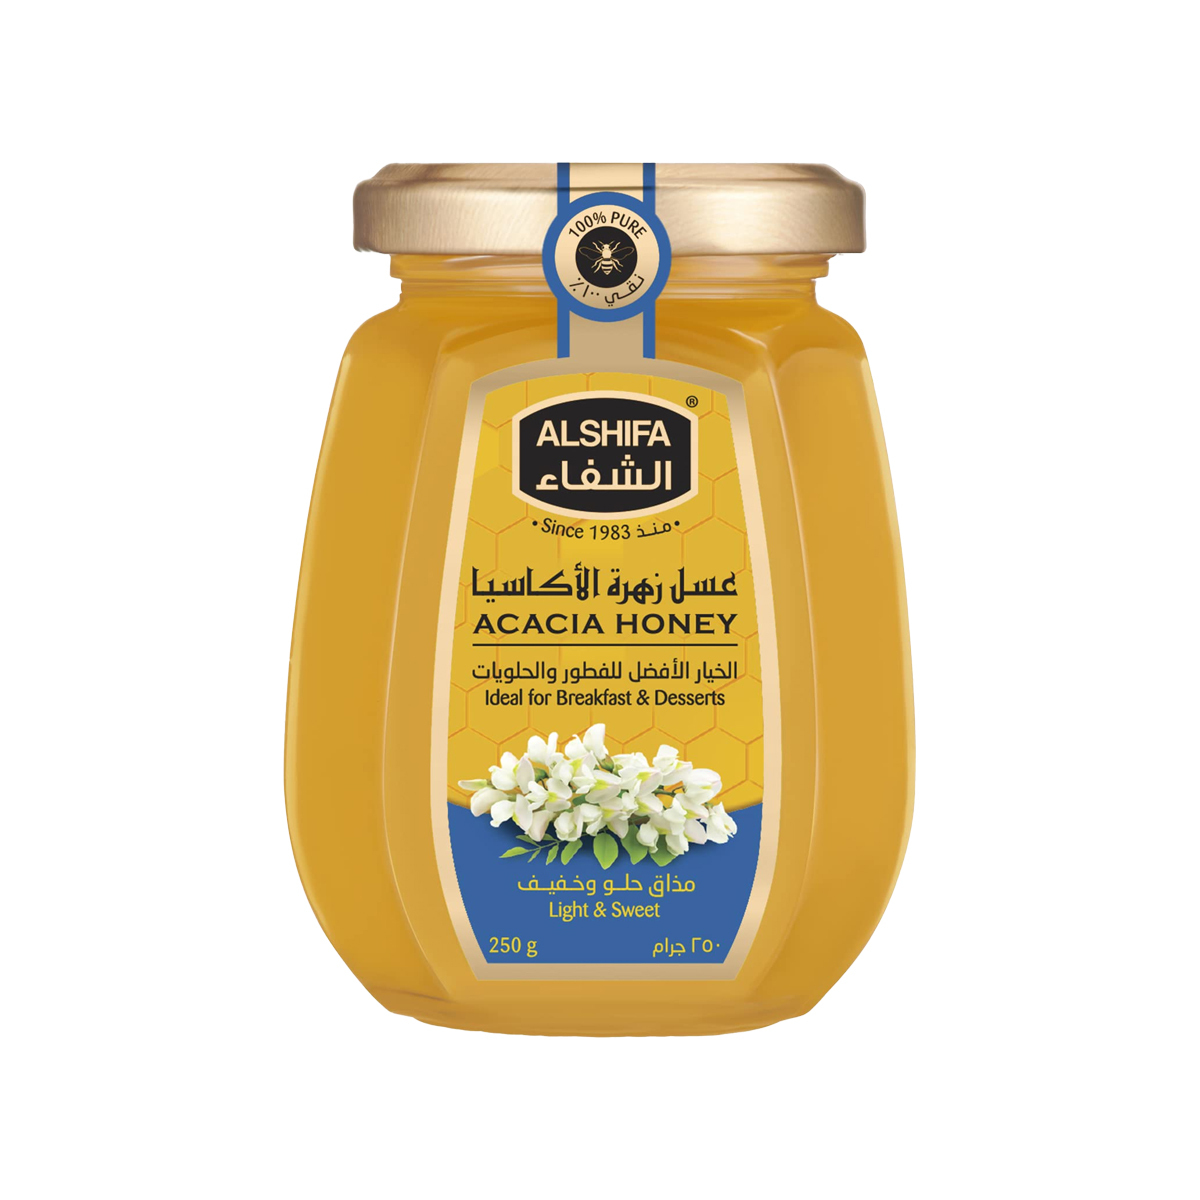 Al Shifa Acacia Honey 250g